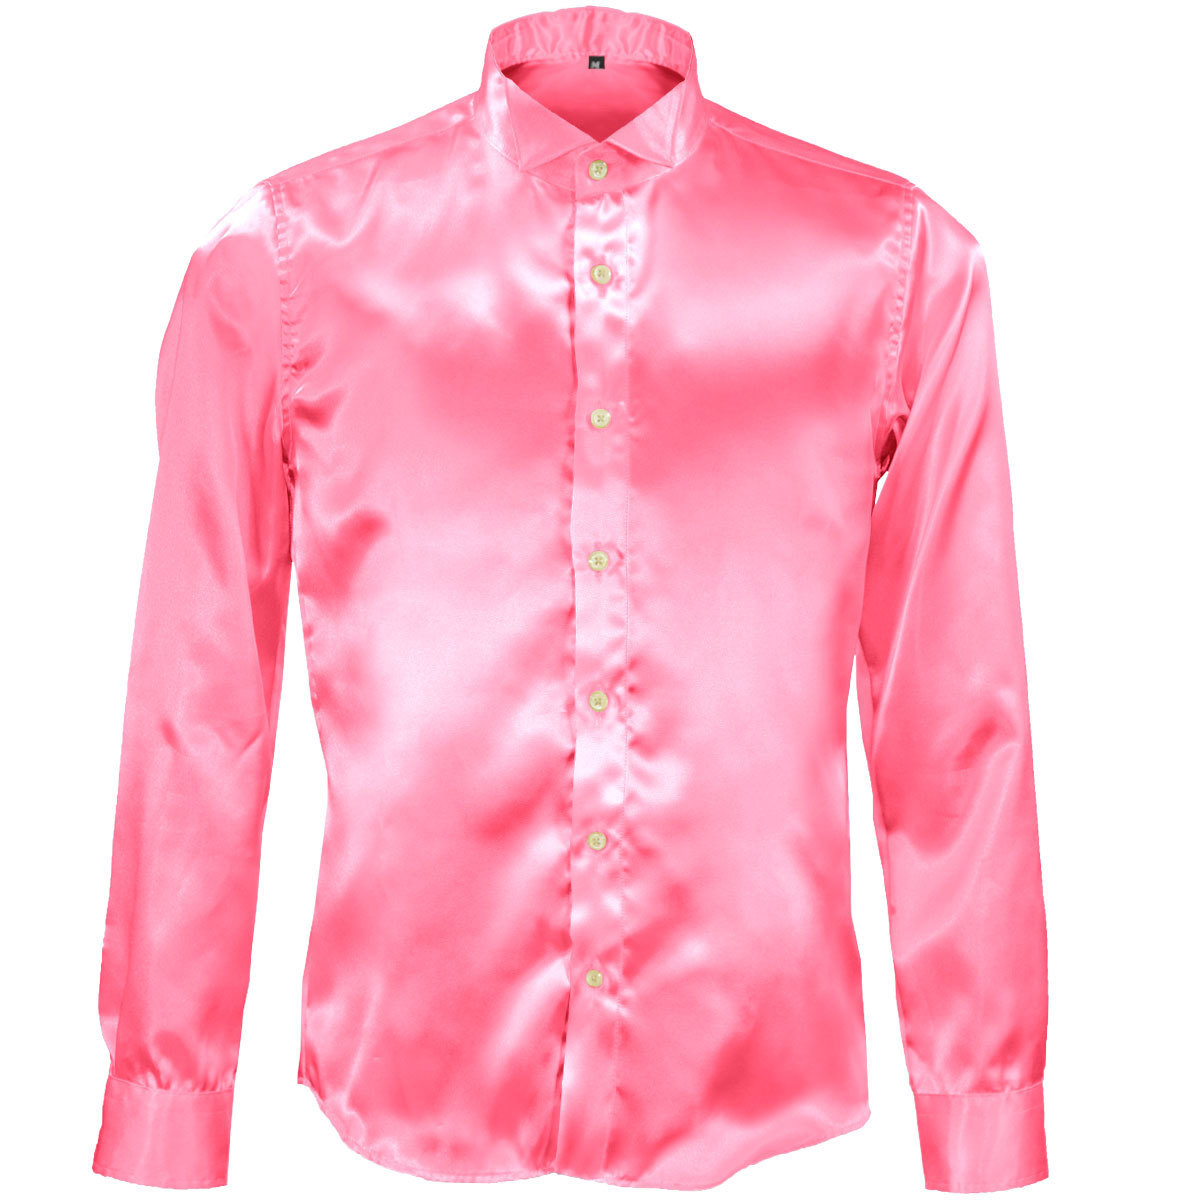 161208-pk [SALE] wing цвет одноцветный глянец длинный рукав костюм форма презентация сорочка мужской сделано в Японии ( автомобиль i колено розовый ) SS party 